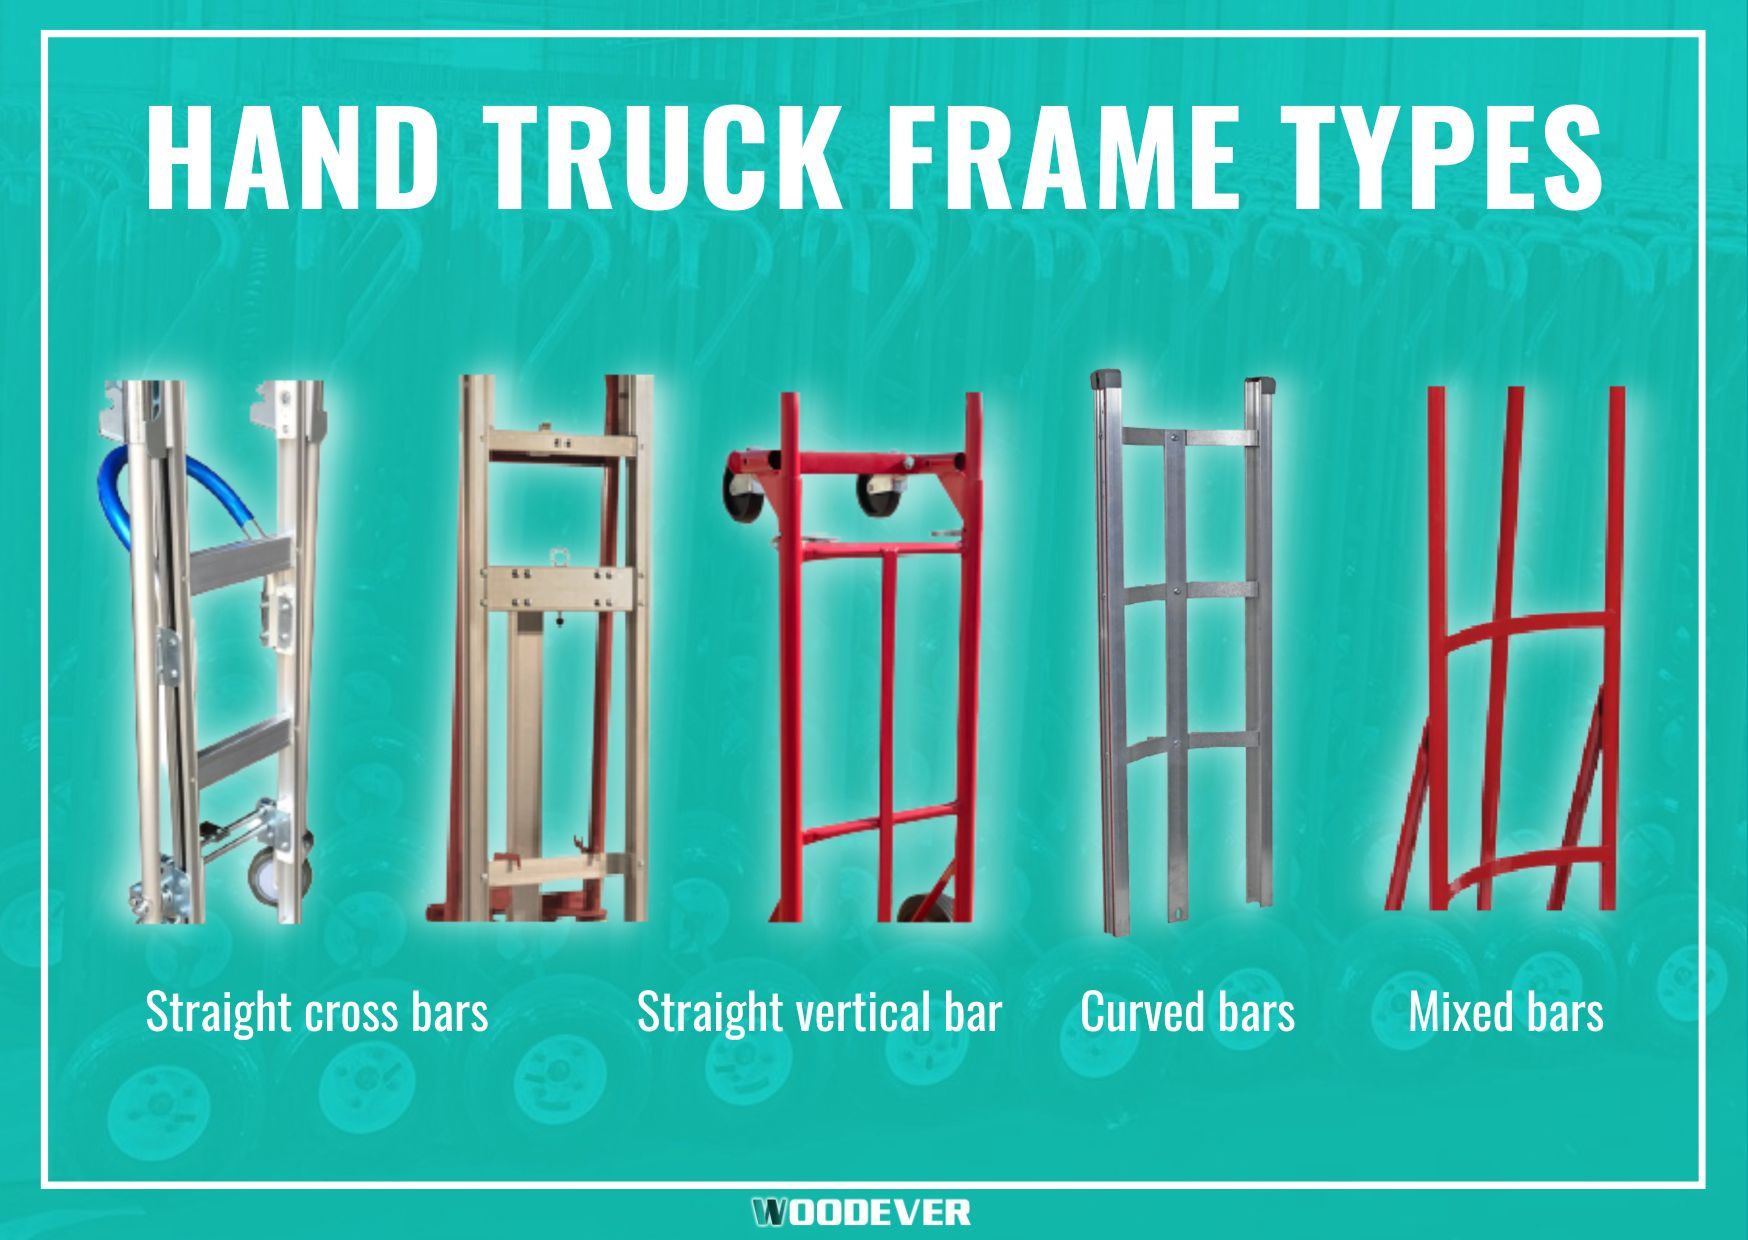 हैंड ट्रक, डॉली कार्ट के सामान्य प्रकार: स्टील फ्रेम, एल्यूमिनियम फ्रेम, मोड़ी हुई फ्रेम